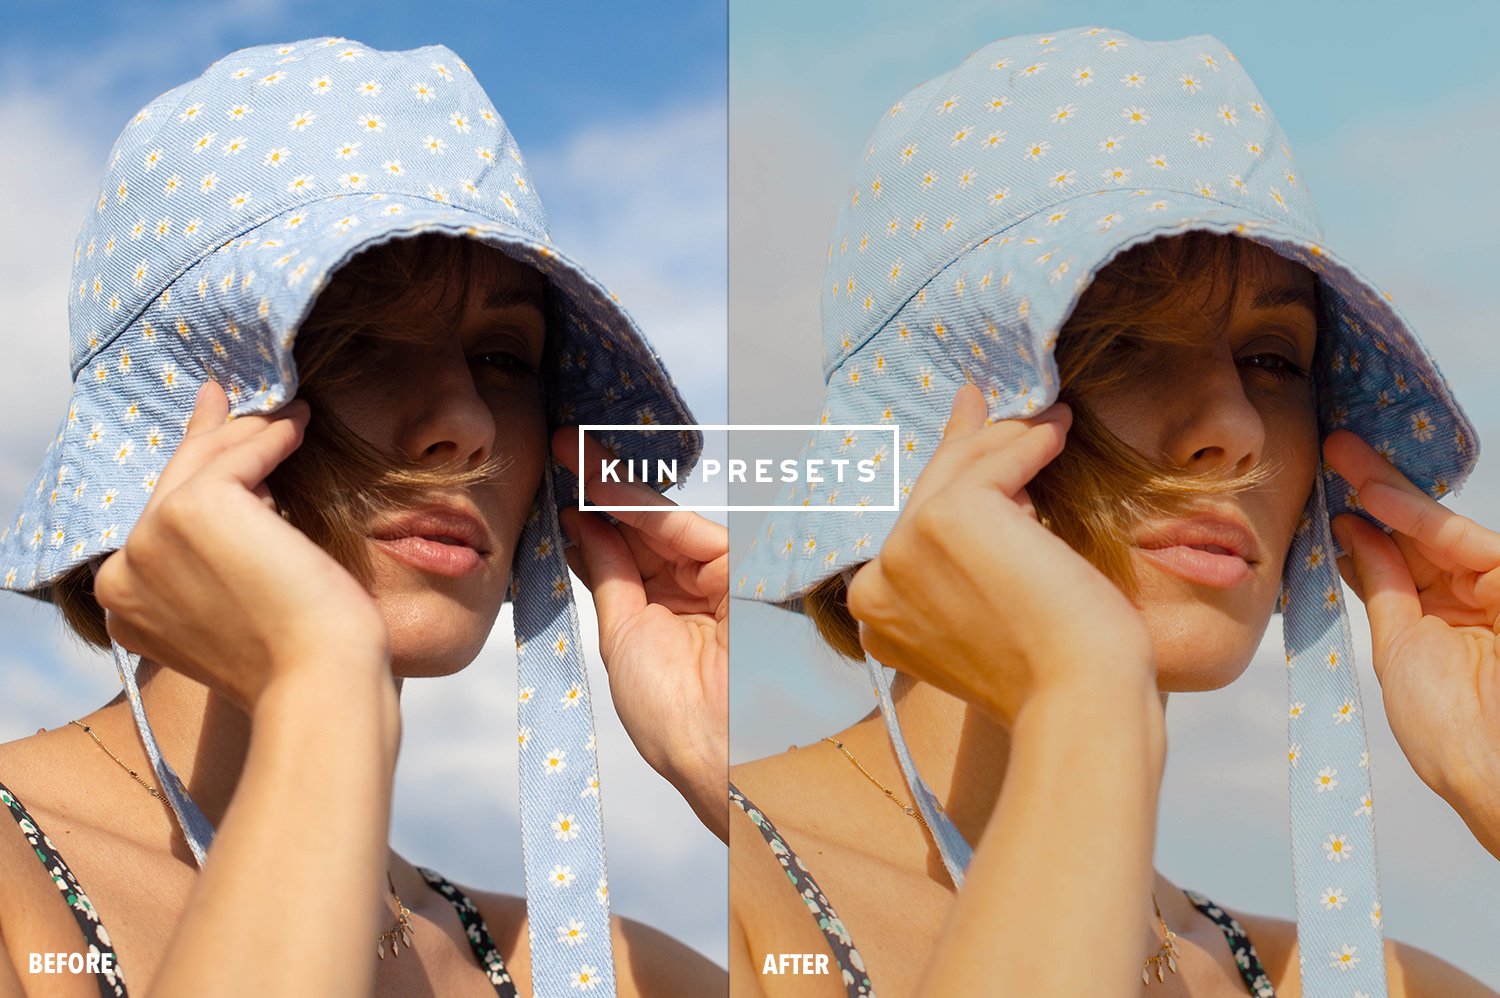 08kiin lightroom presets summer presets summer filter influencer presets blogger filter indie presets spring aesthetic presets 256